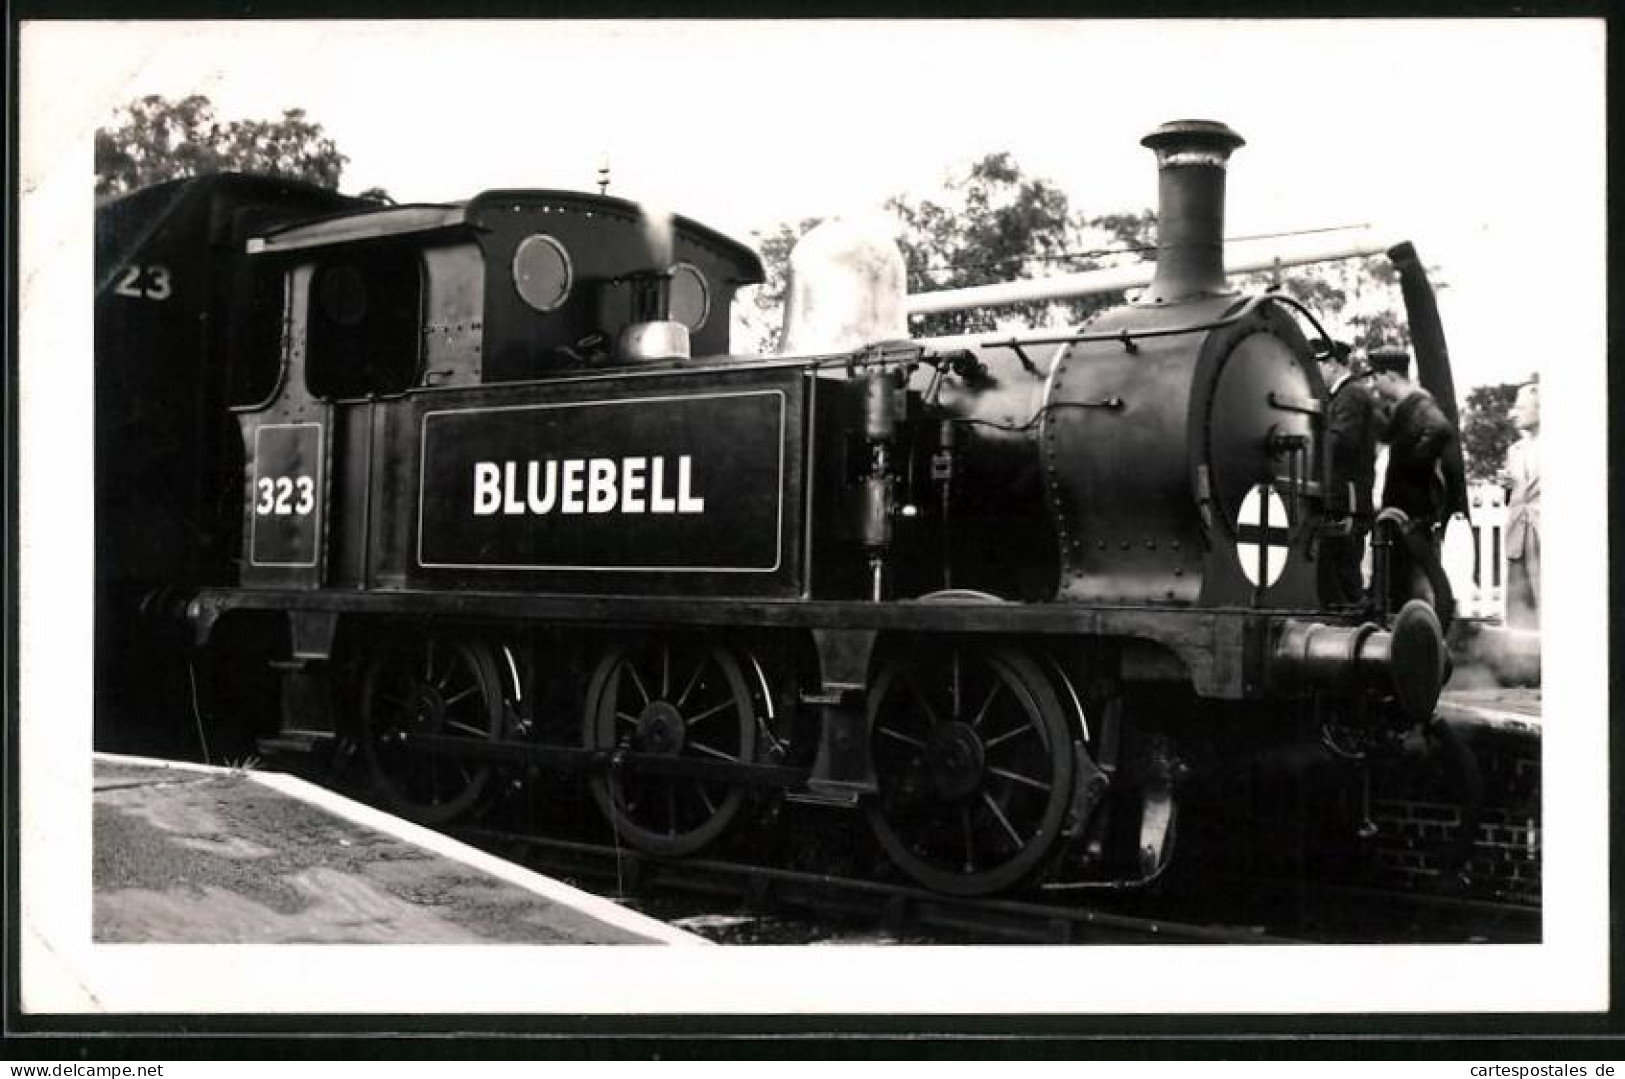 Fotografie Britische Eisenbahn, Dampflok, Lokomotive Bluebell Nr. 323  - Treinen